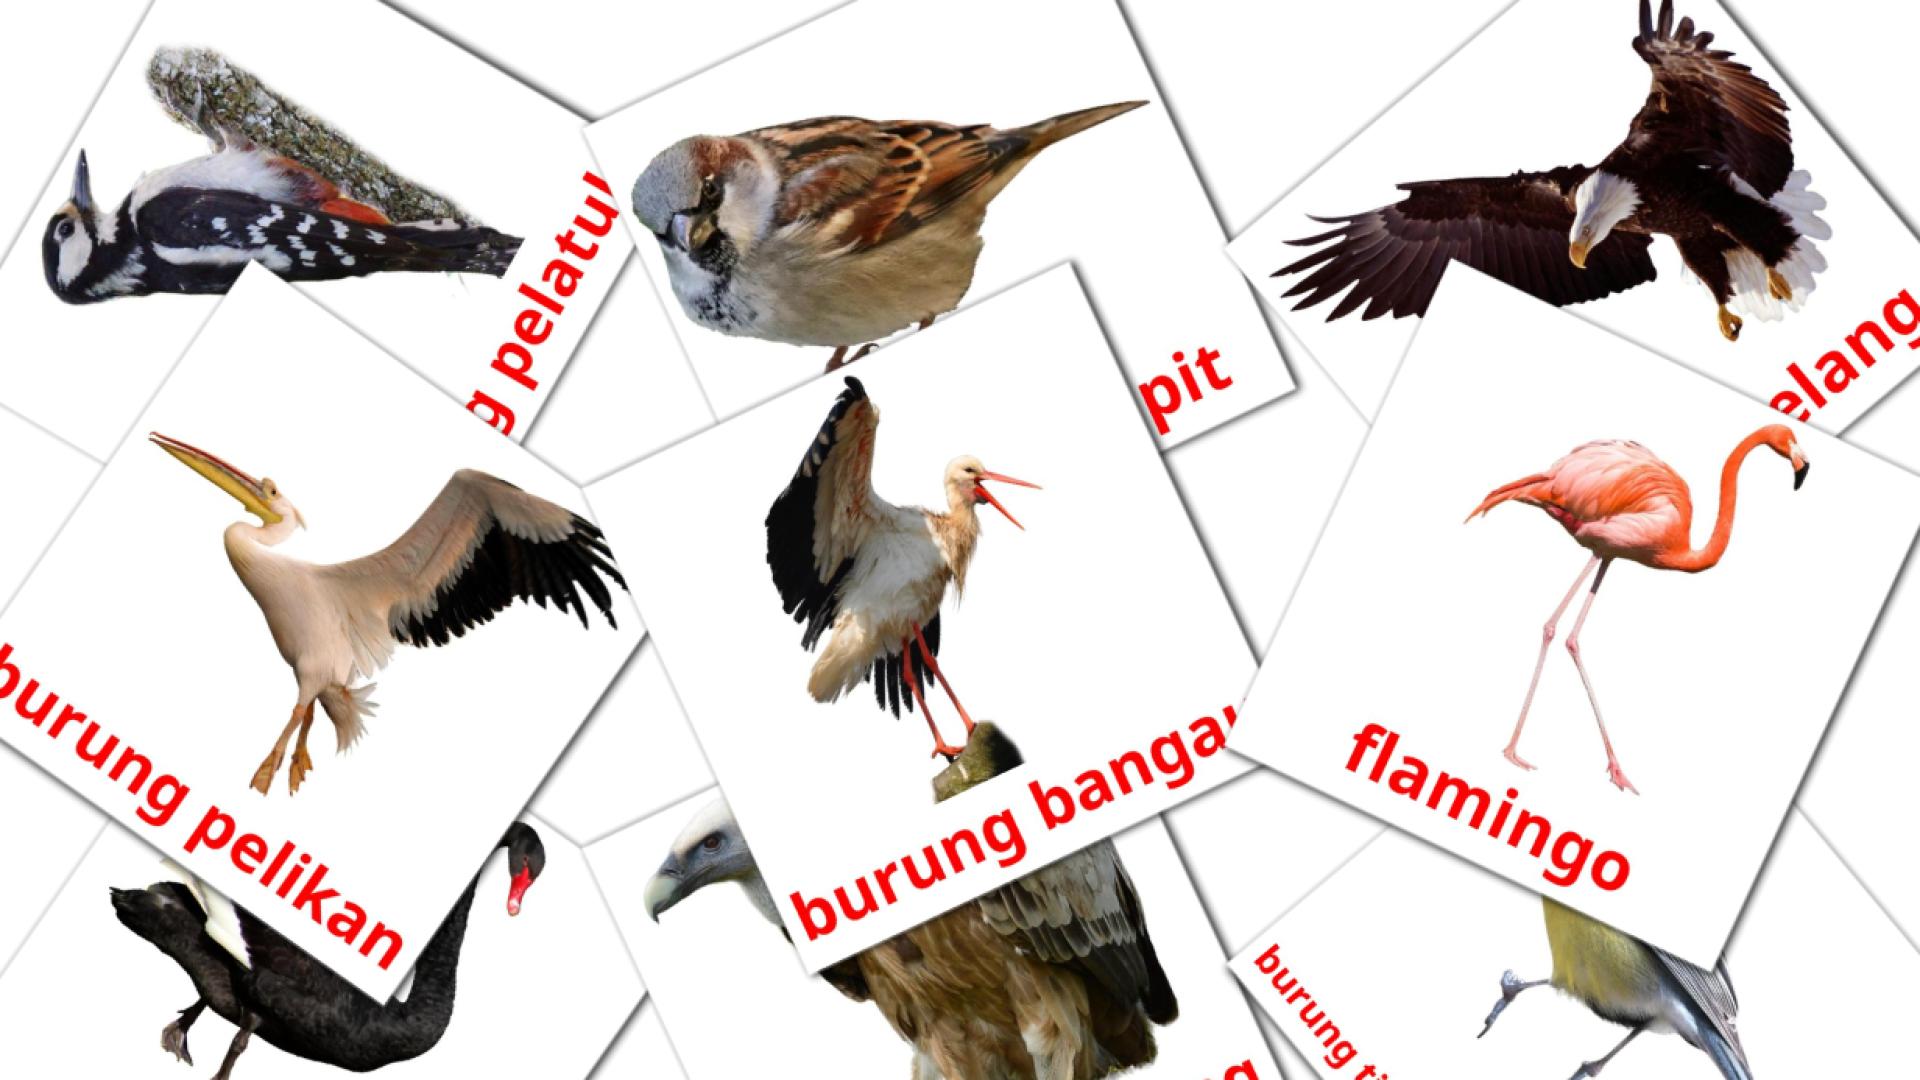 18 tarjetas didacticas de Burung liar